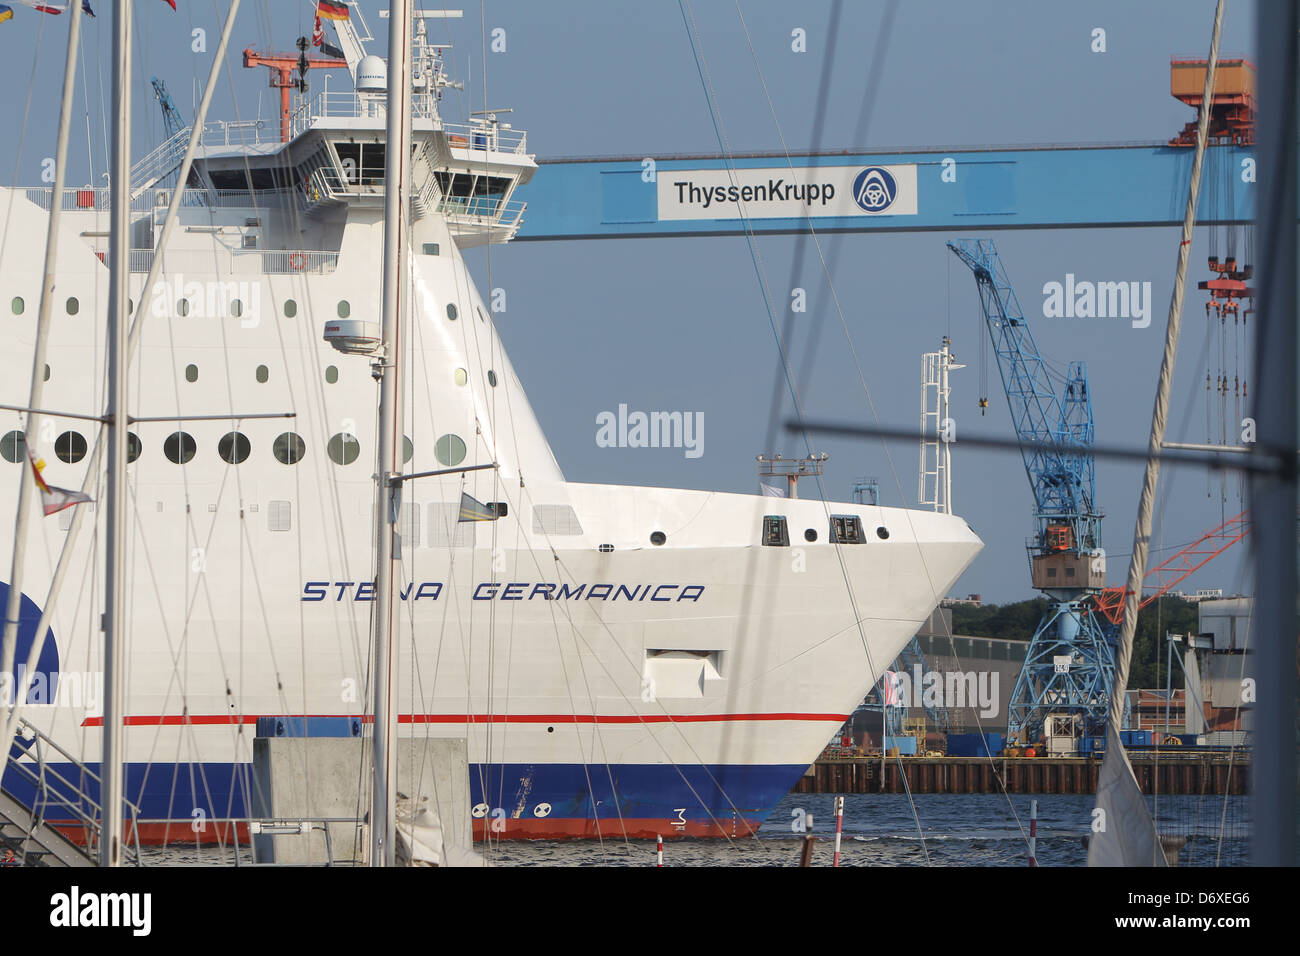 Die Stena Germanica aus der Kieler Werft Kiel, Deutschland Stockfoto